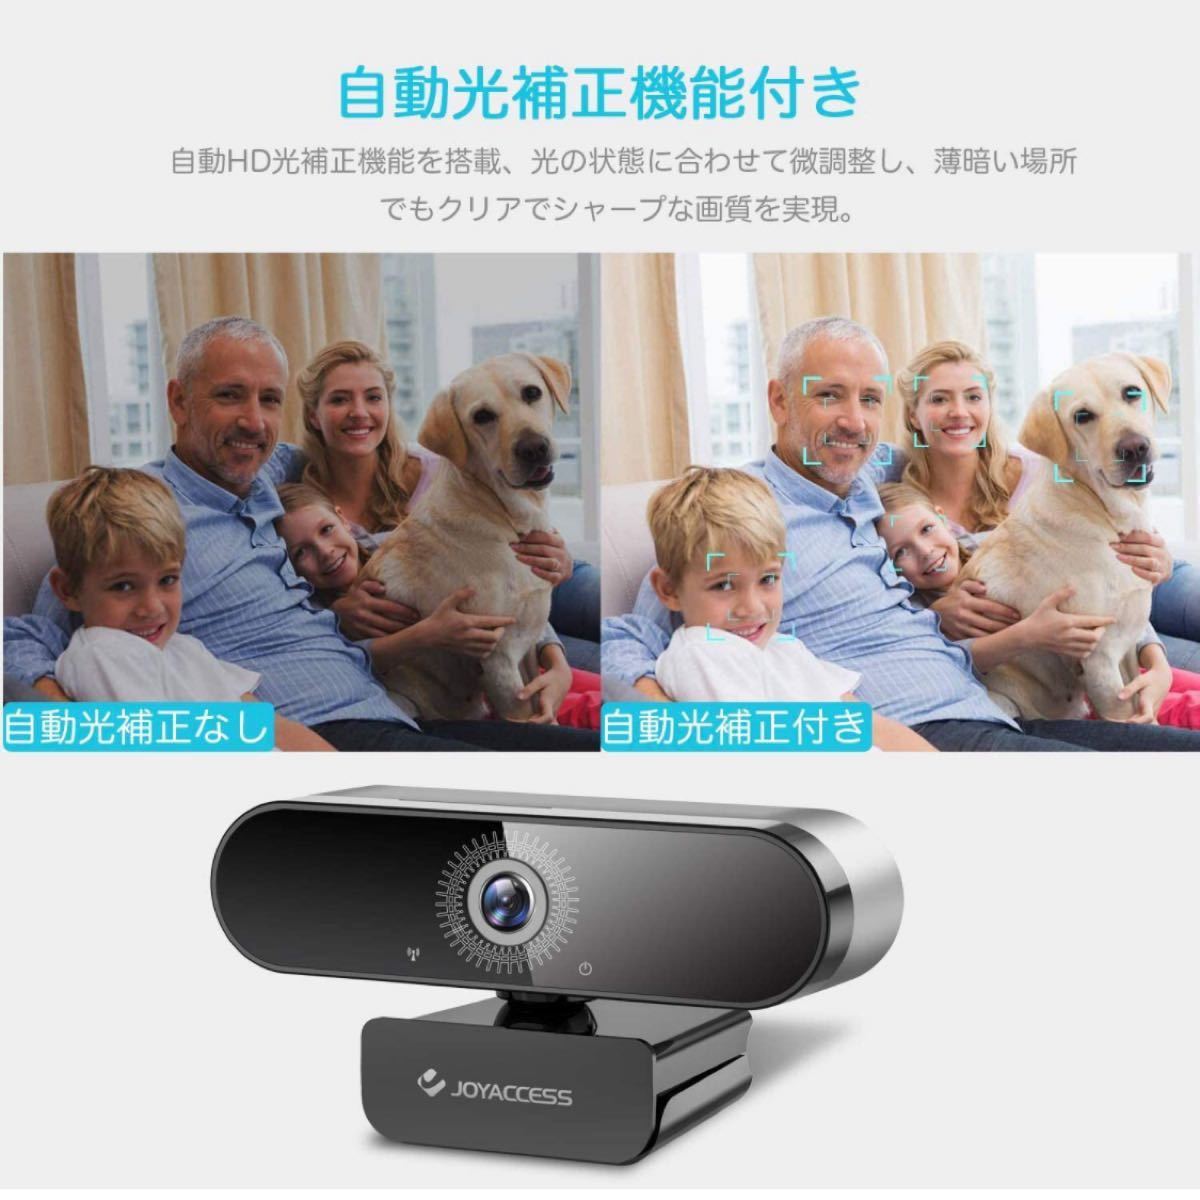 ウェブカメラ高画質USBカメラ360°回転zoomオンライン授業ゲーム実況生放送